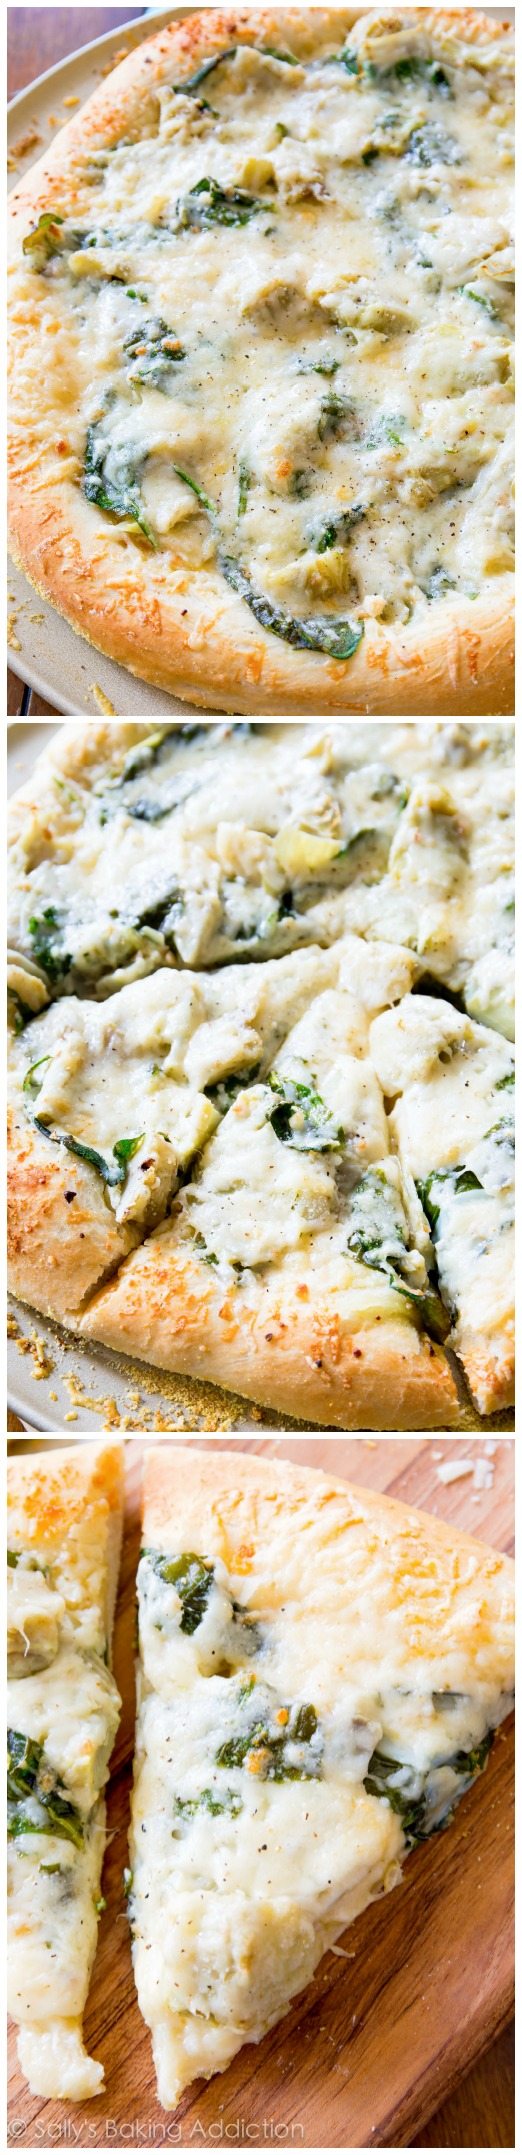 Pizza aux épinards et artichauts au fromage blanc - cette pizza blanche vous rappellera une trempette crémeuse et réconfortante aux artichauts!